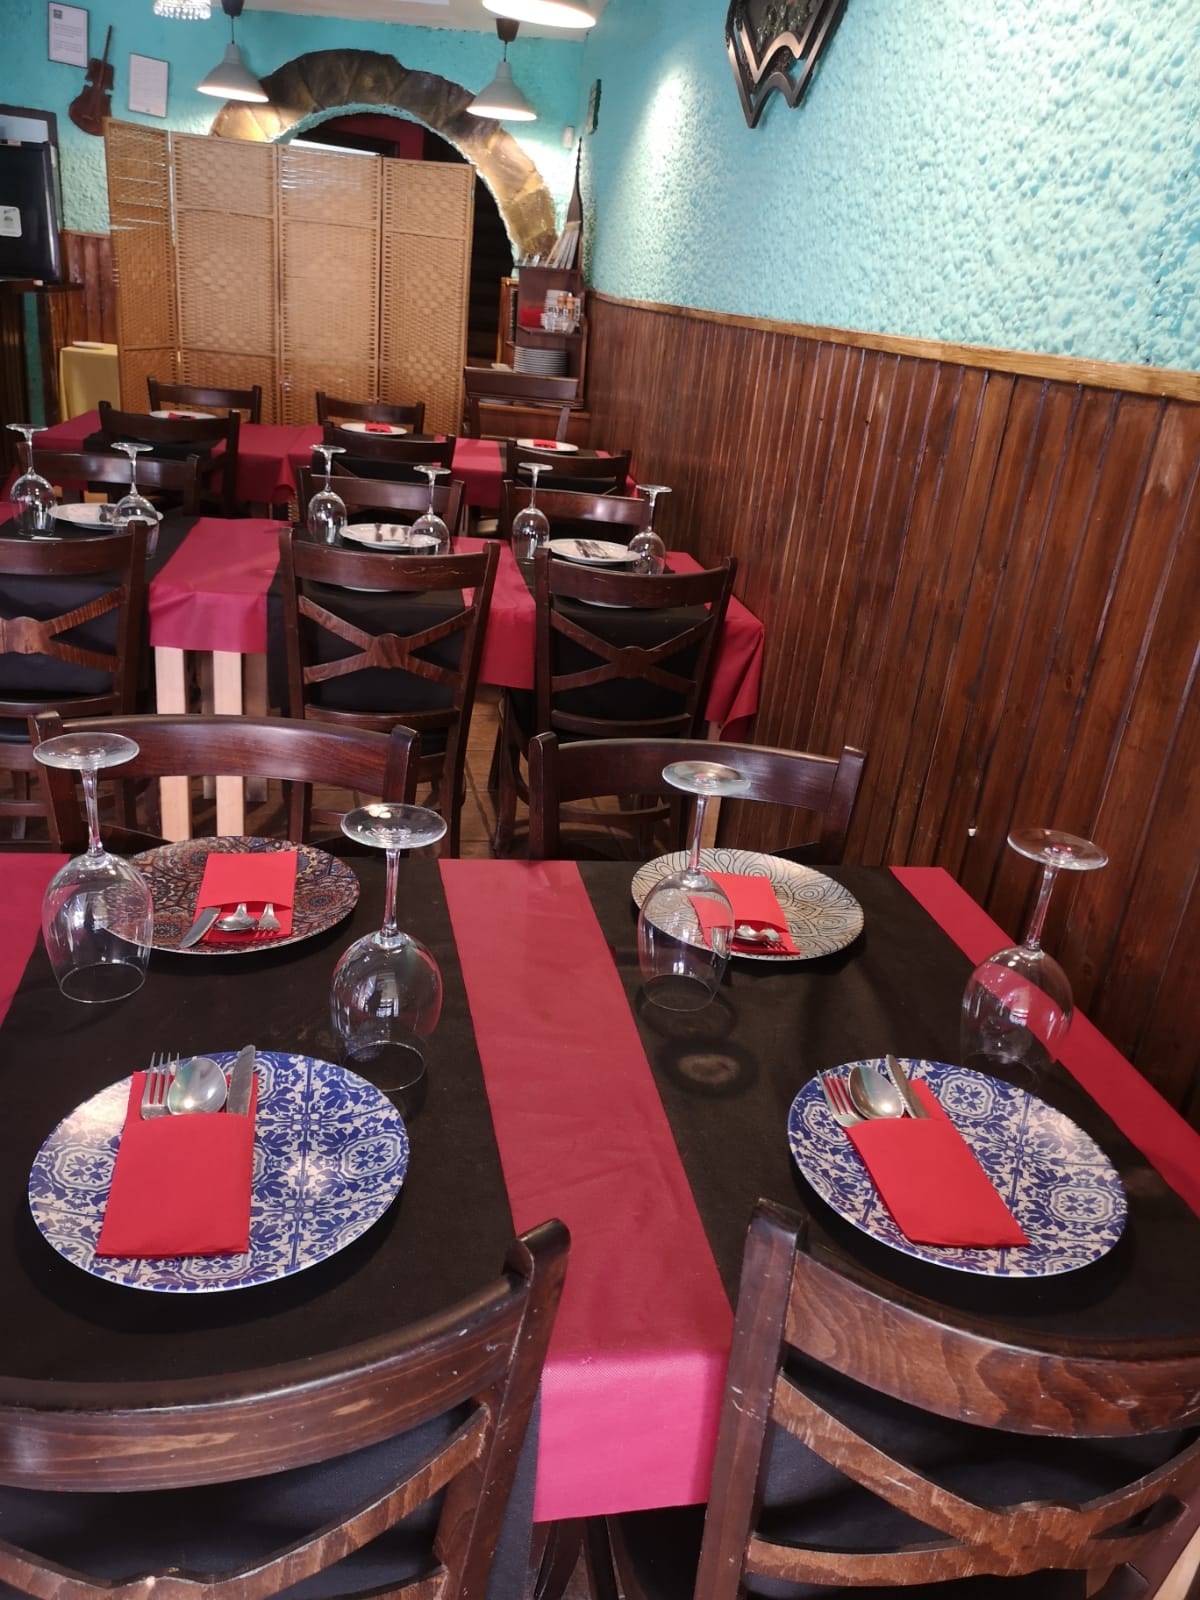 Restaurante con platillos 100% halal, a sólo 5 minutos a pie de playa La Malagueta.                        